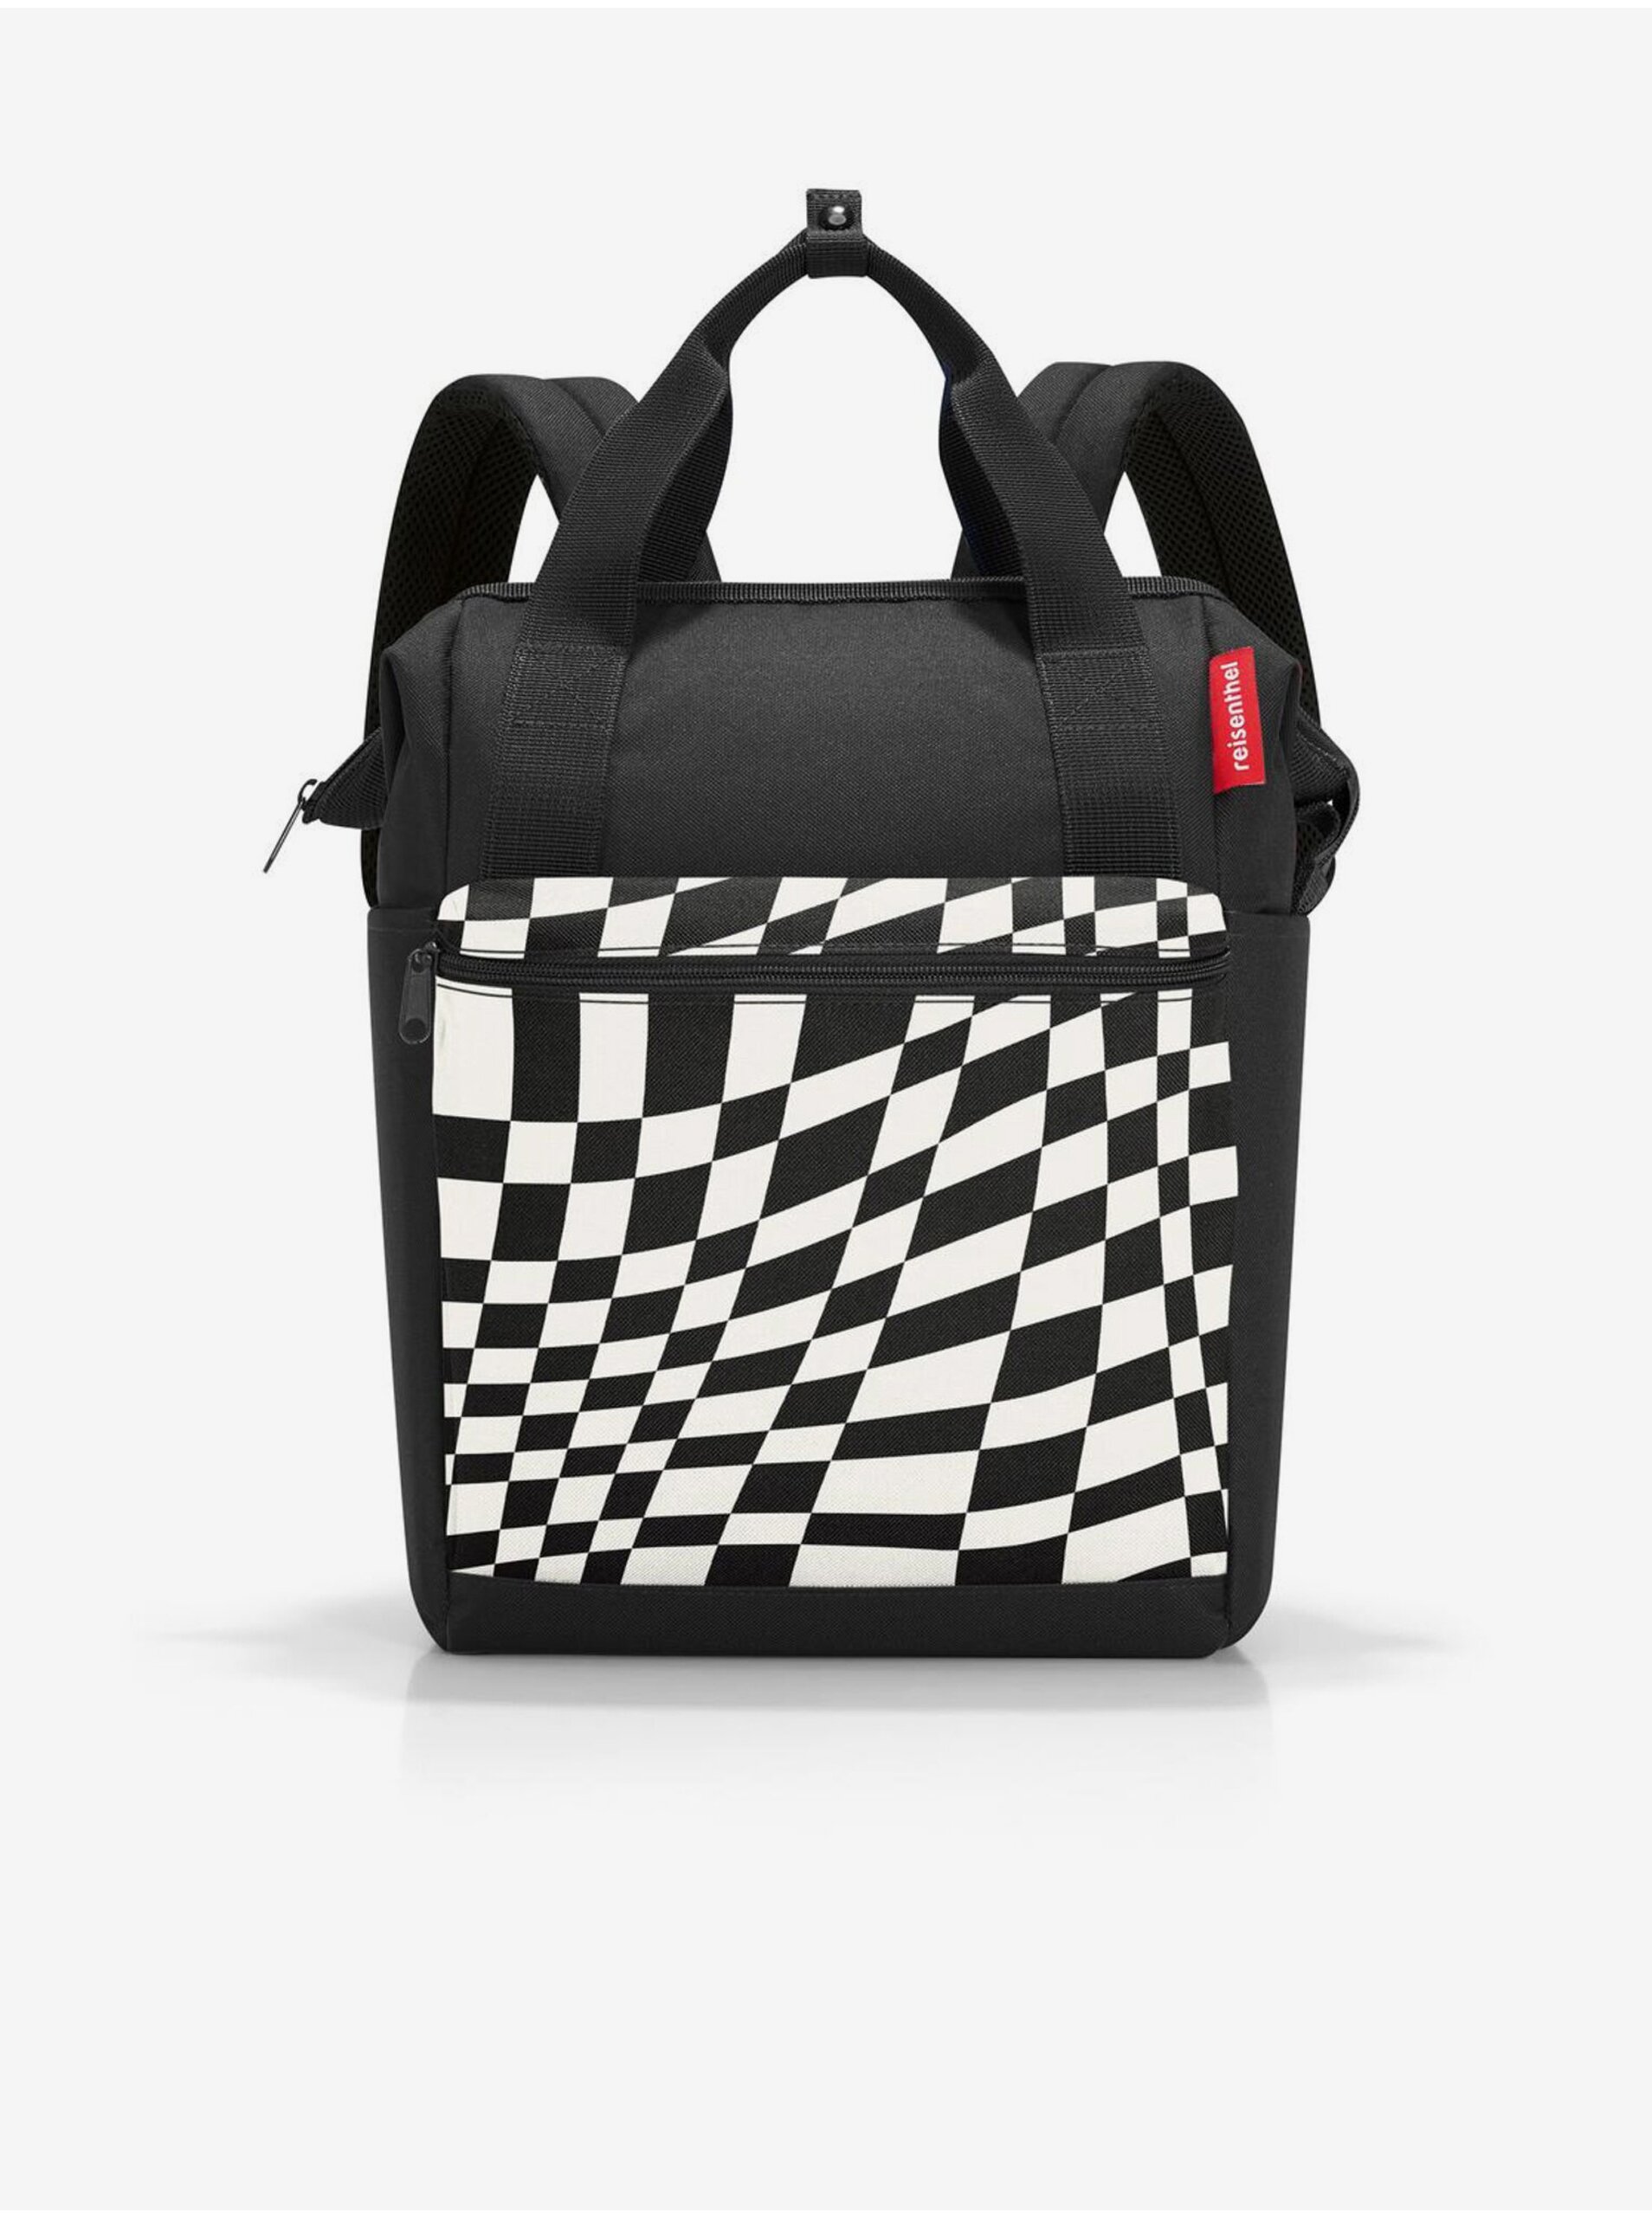 E-shop Bielo-čierny vzorovaný batoh a taška 2v1 Reisenthel Allrounder R Op-Art